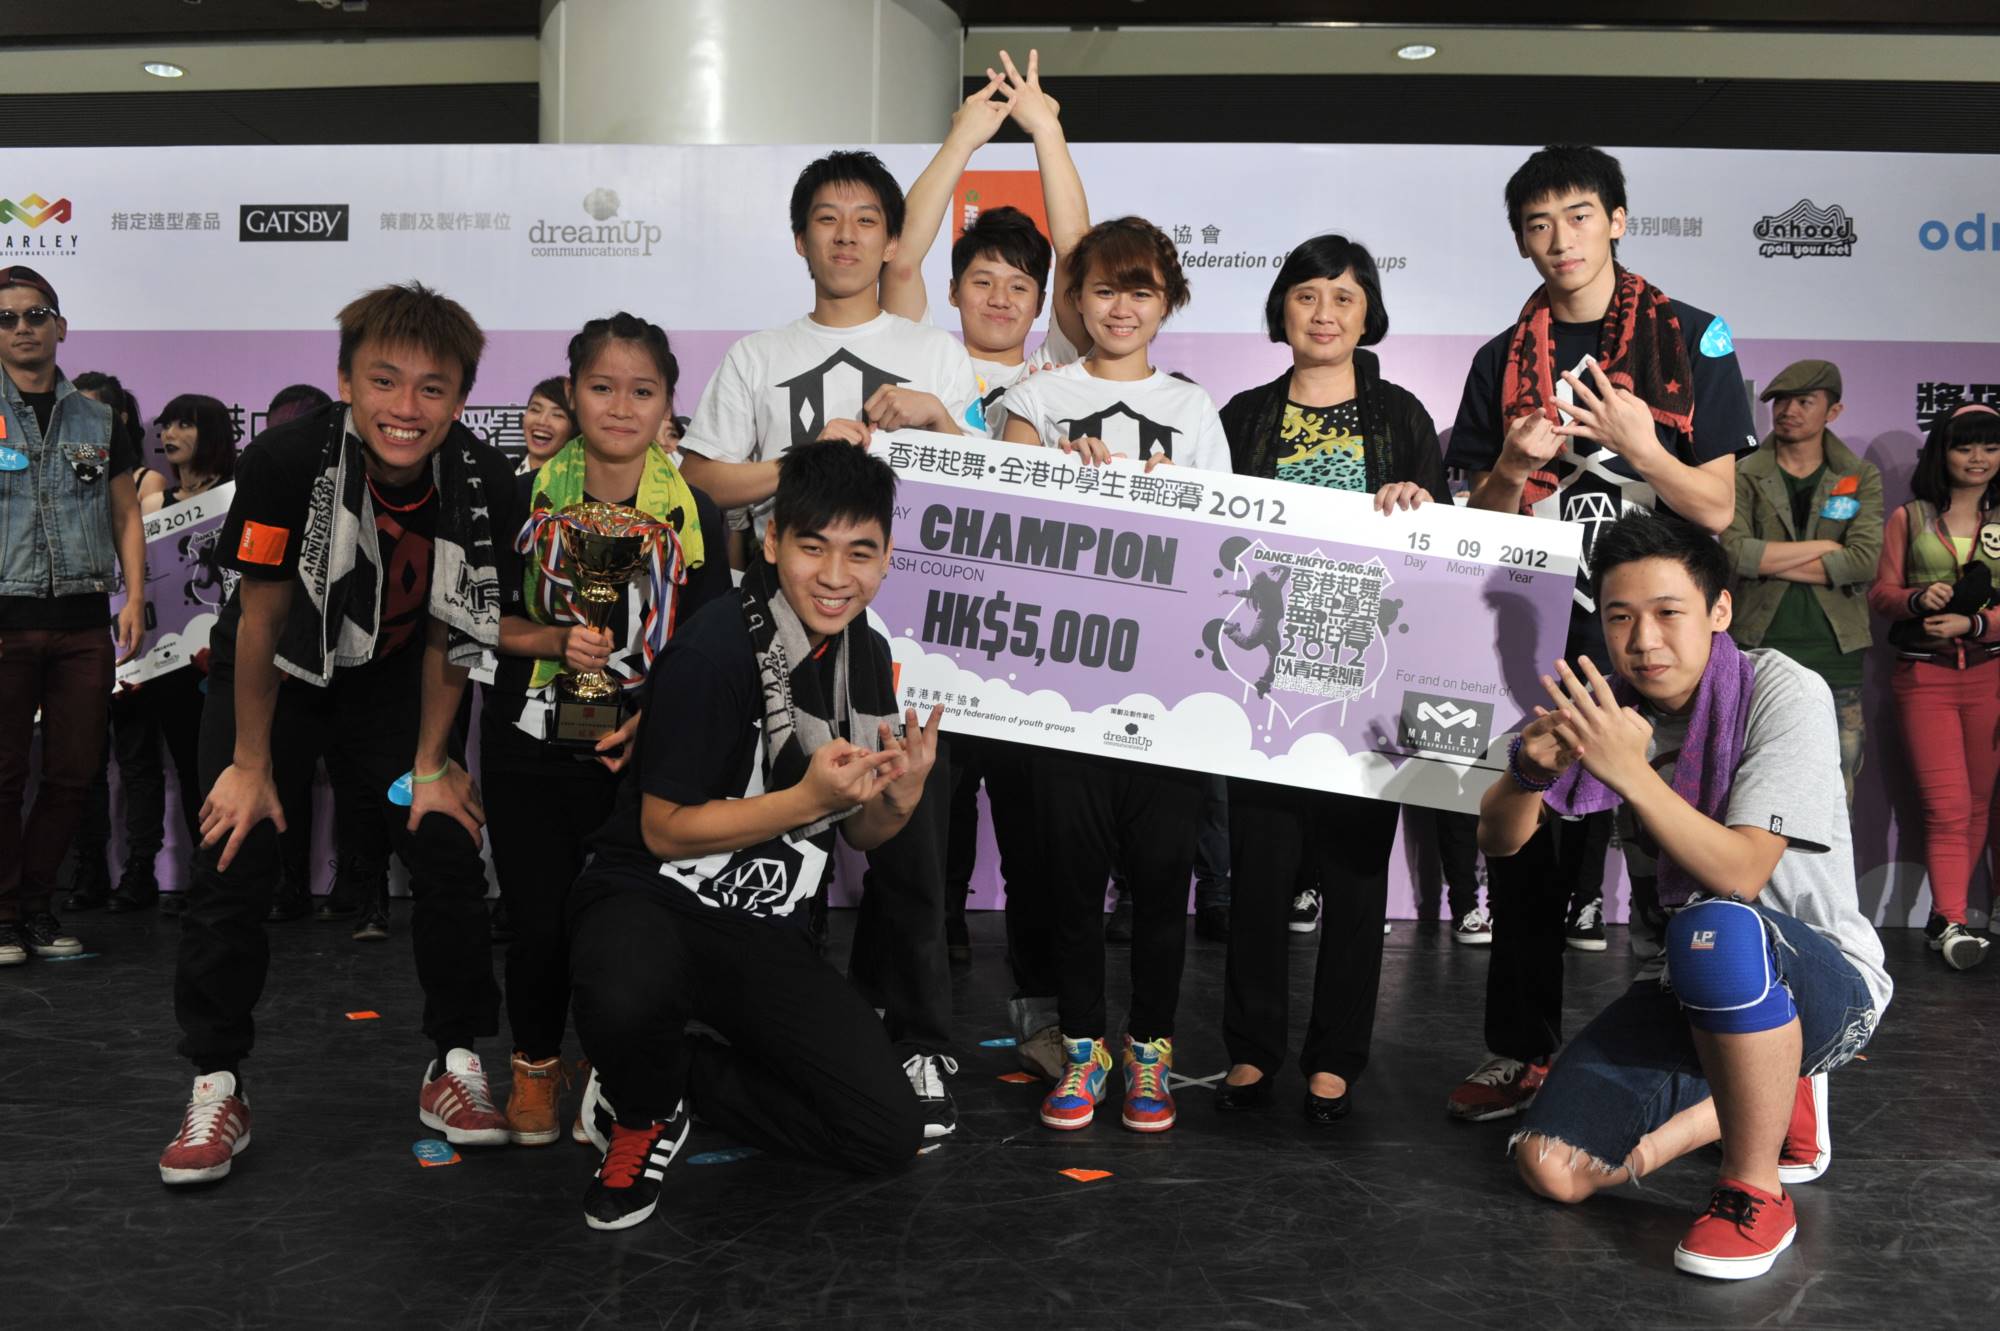 全港中學生舞蹈賽2012得獎隊伍 (4)